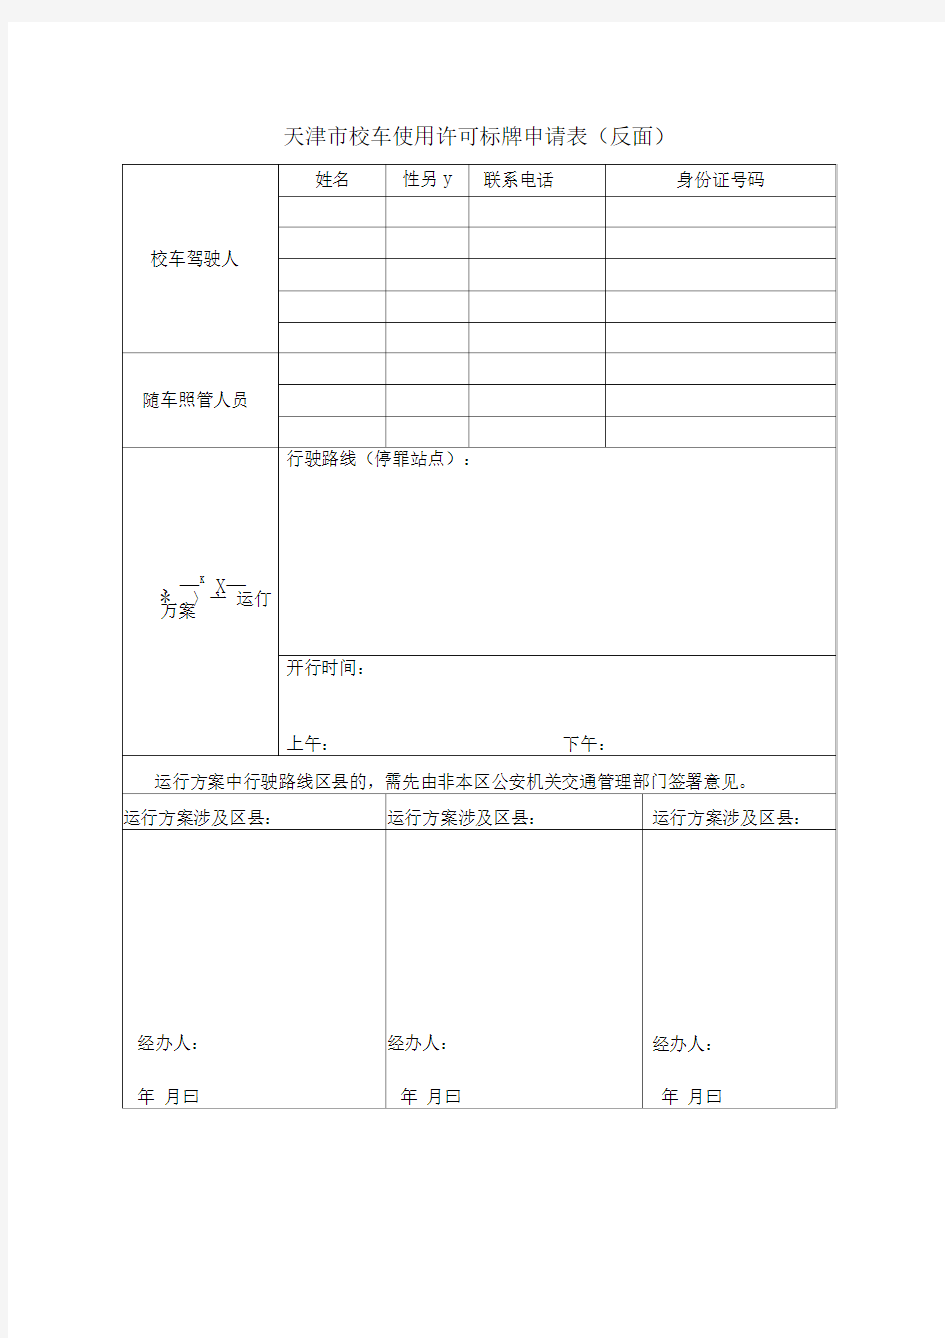 天津市校车使用许可标牌申请表